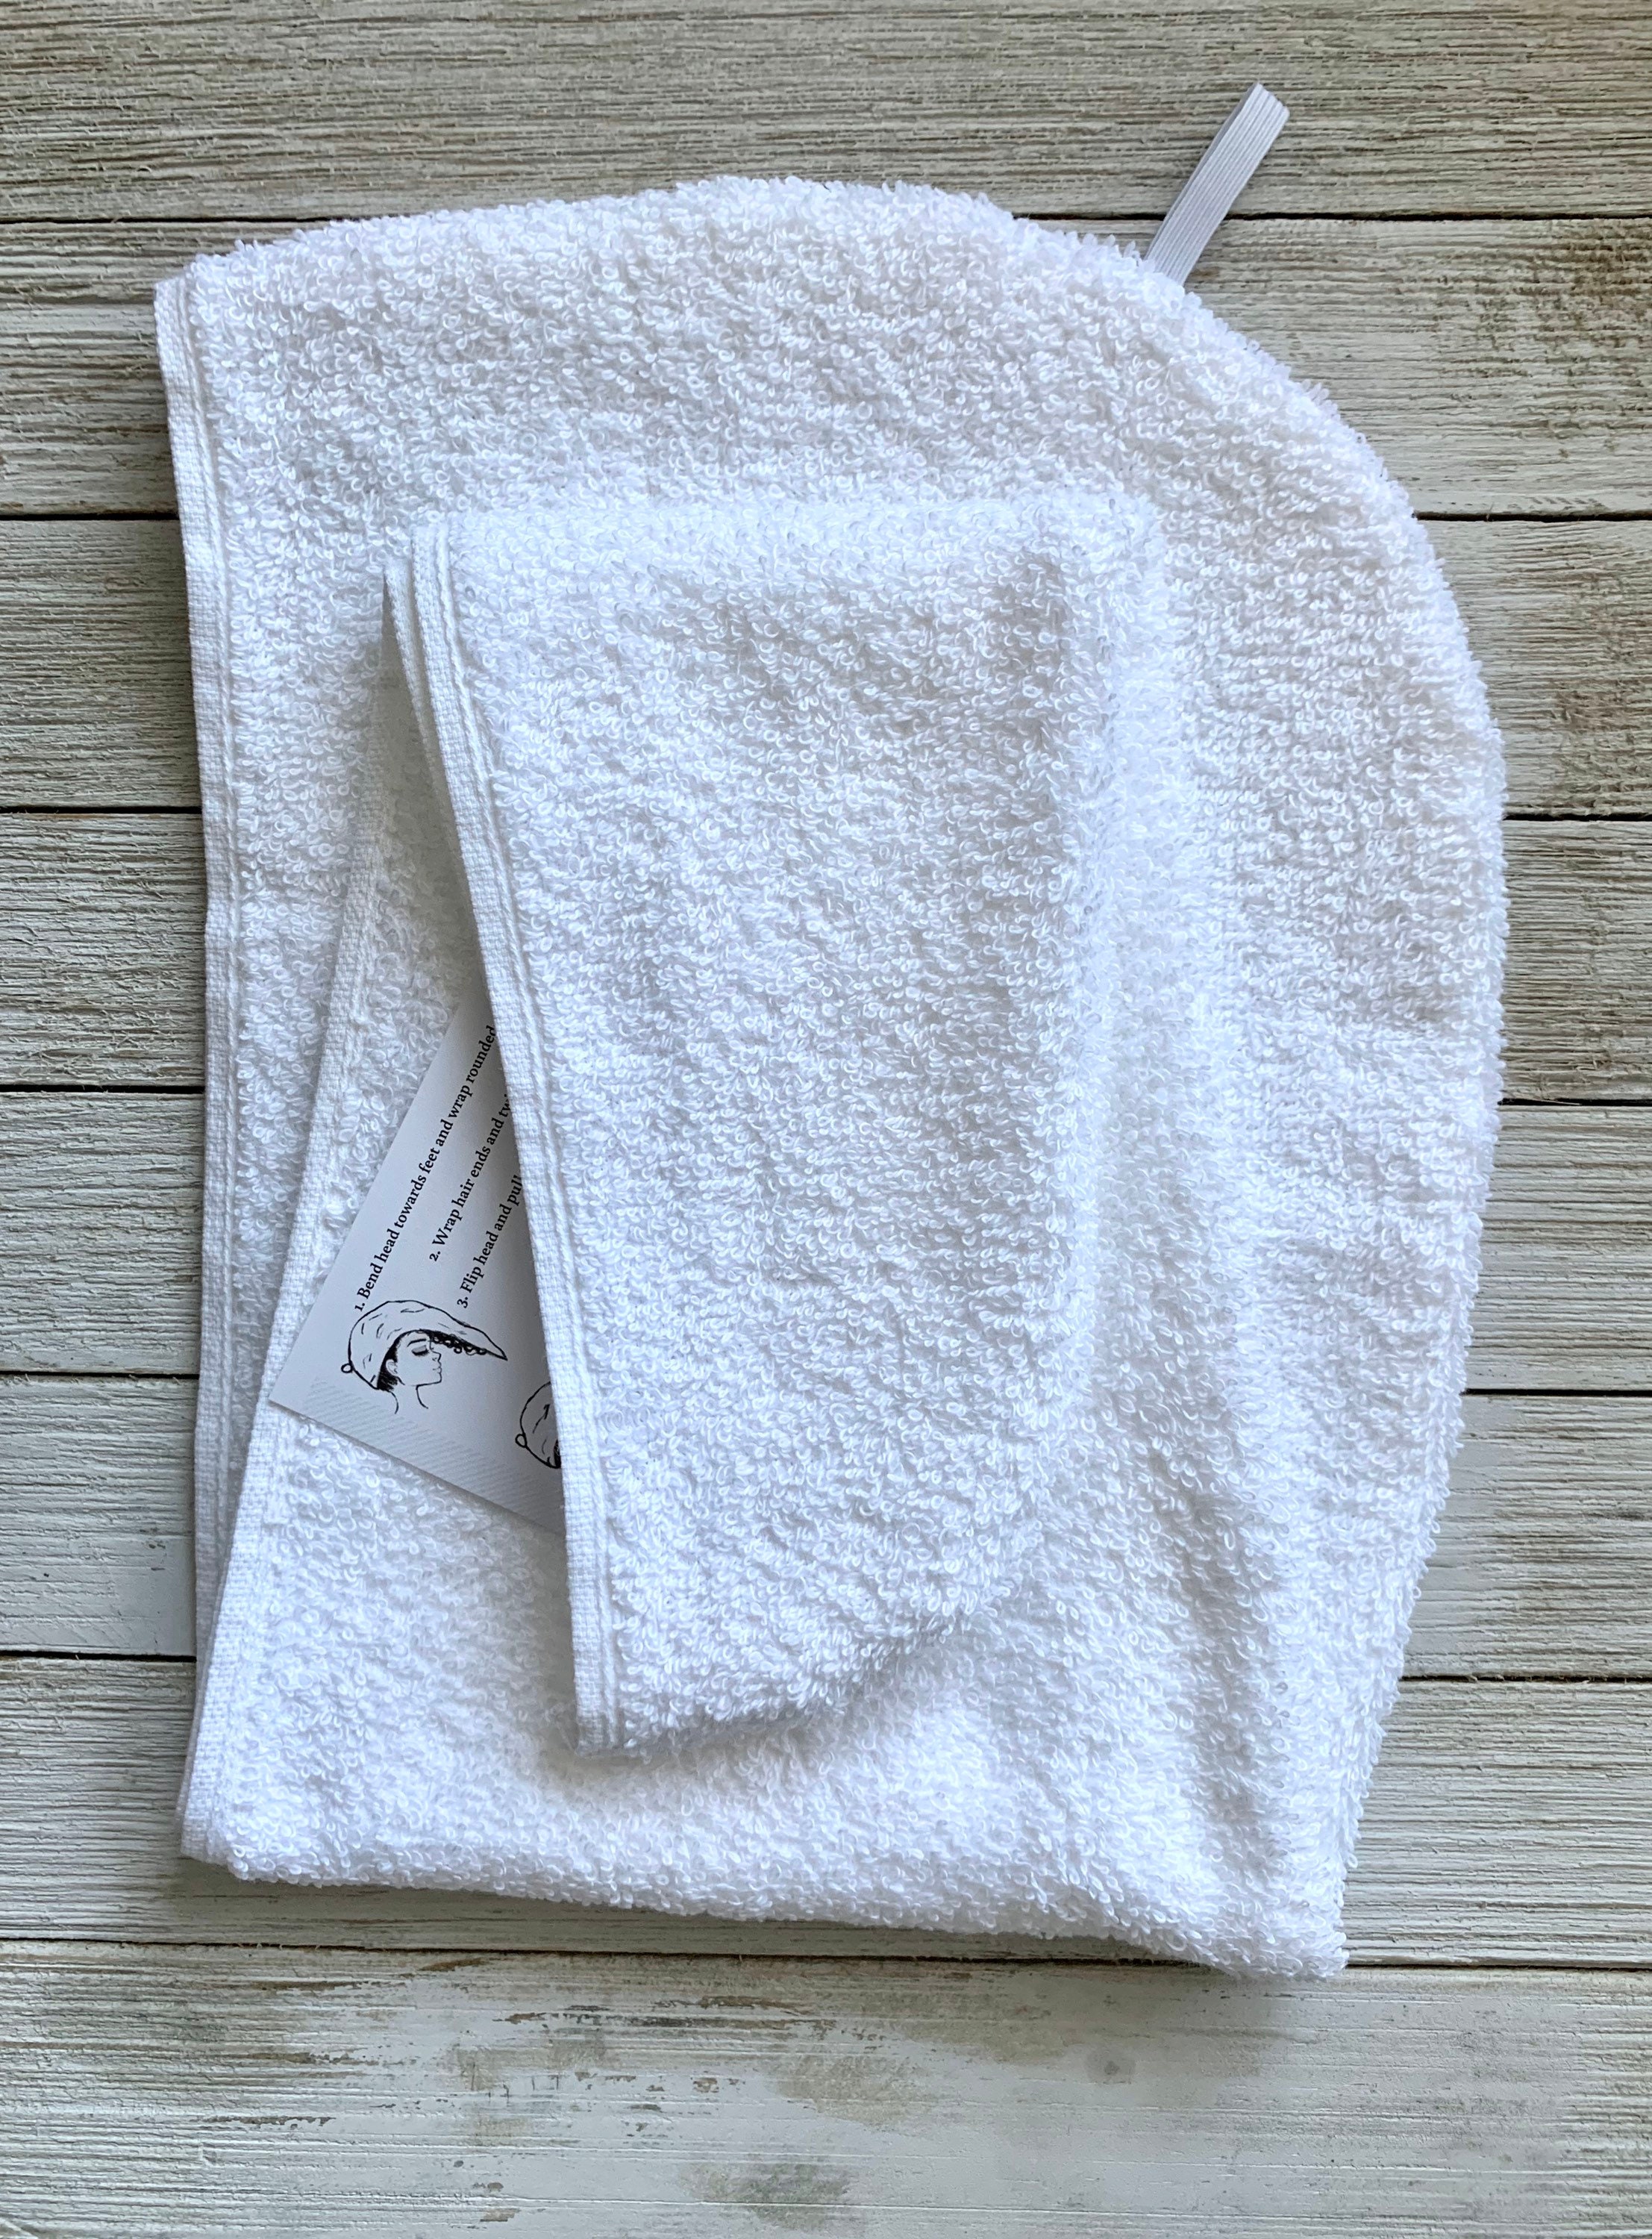 Paquete de 4 toallas de microfibra para el cabello, toallas para la cabeza  para cabello mojado para mujeres, toalla de secado de cabello súper